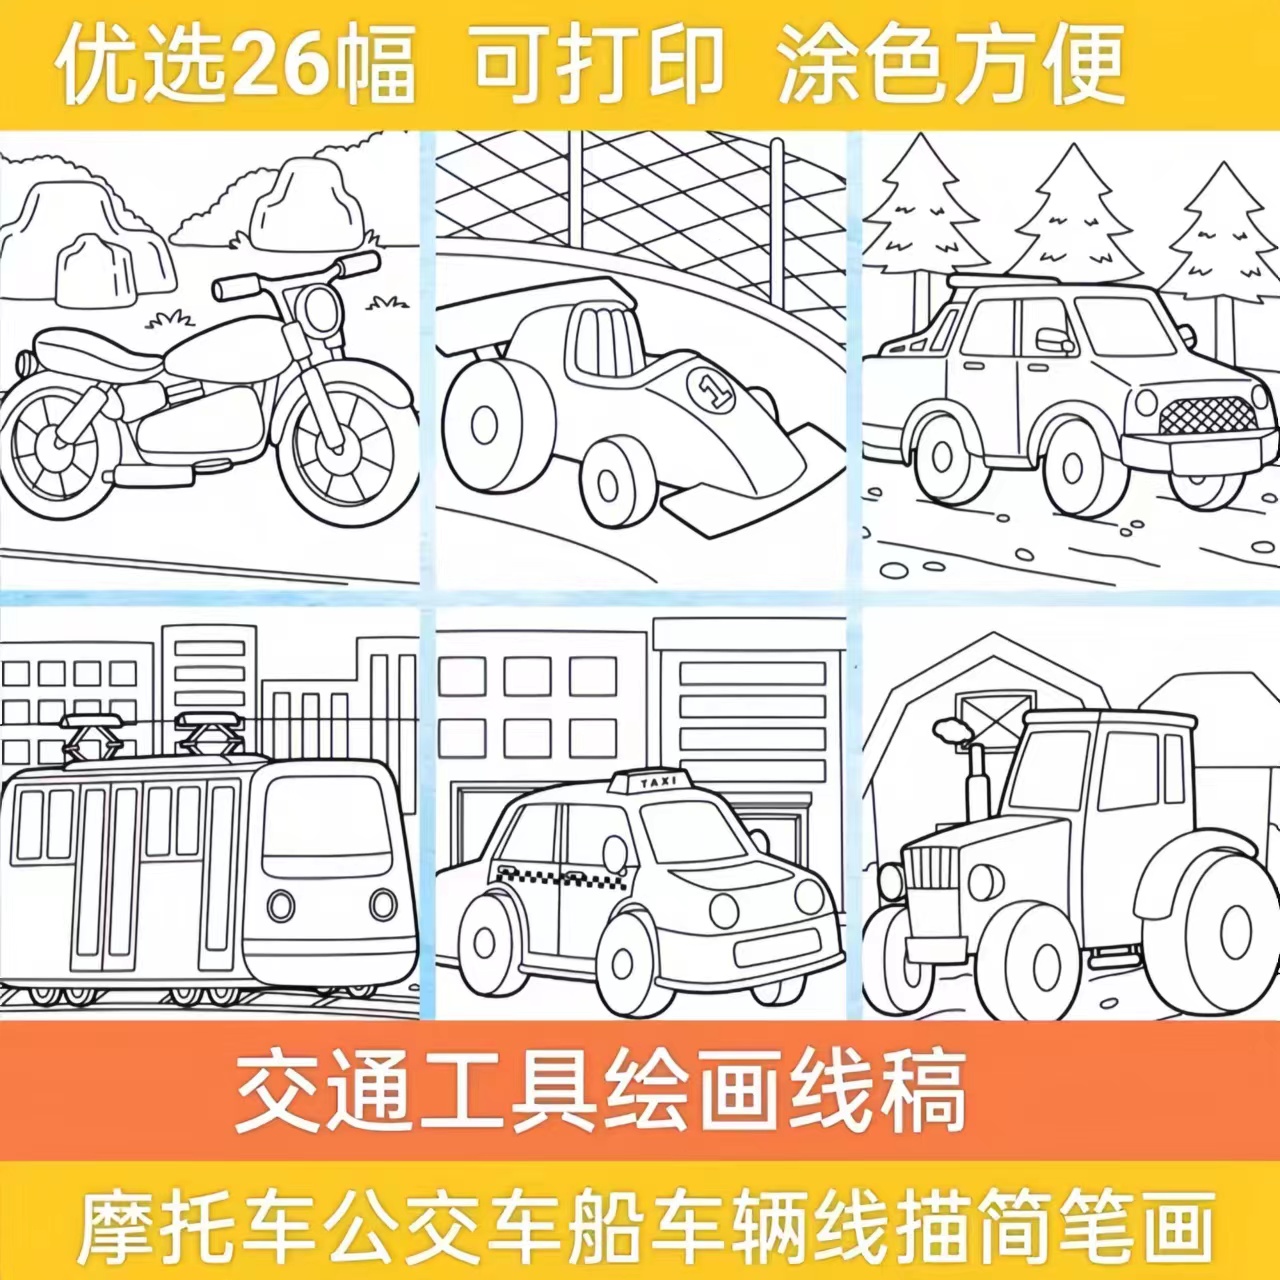 交通工具摩托车挖掘机公交车船车辆线描简笔画儿童涂色插画图素材